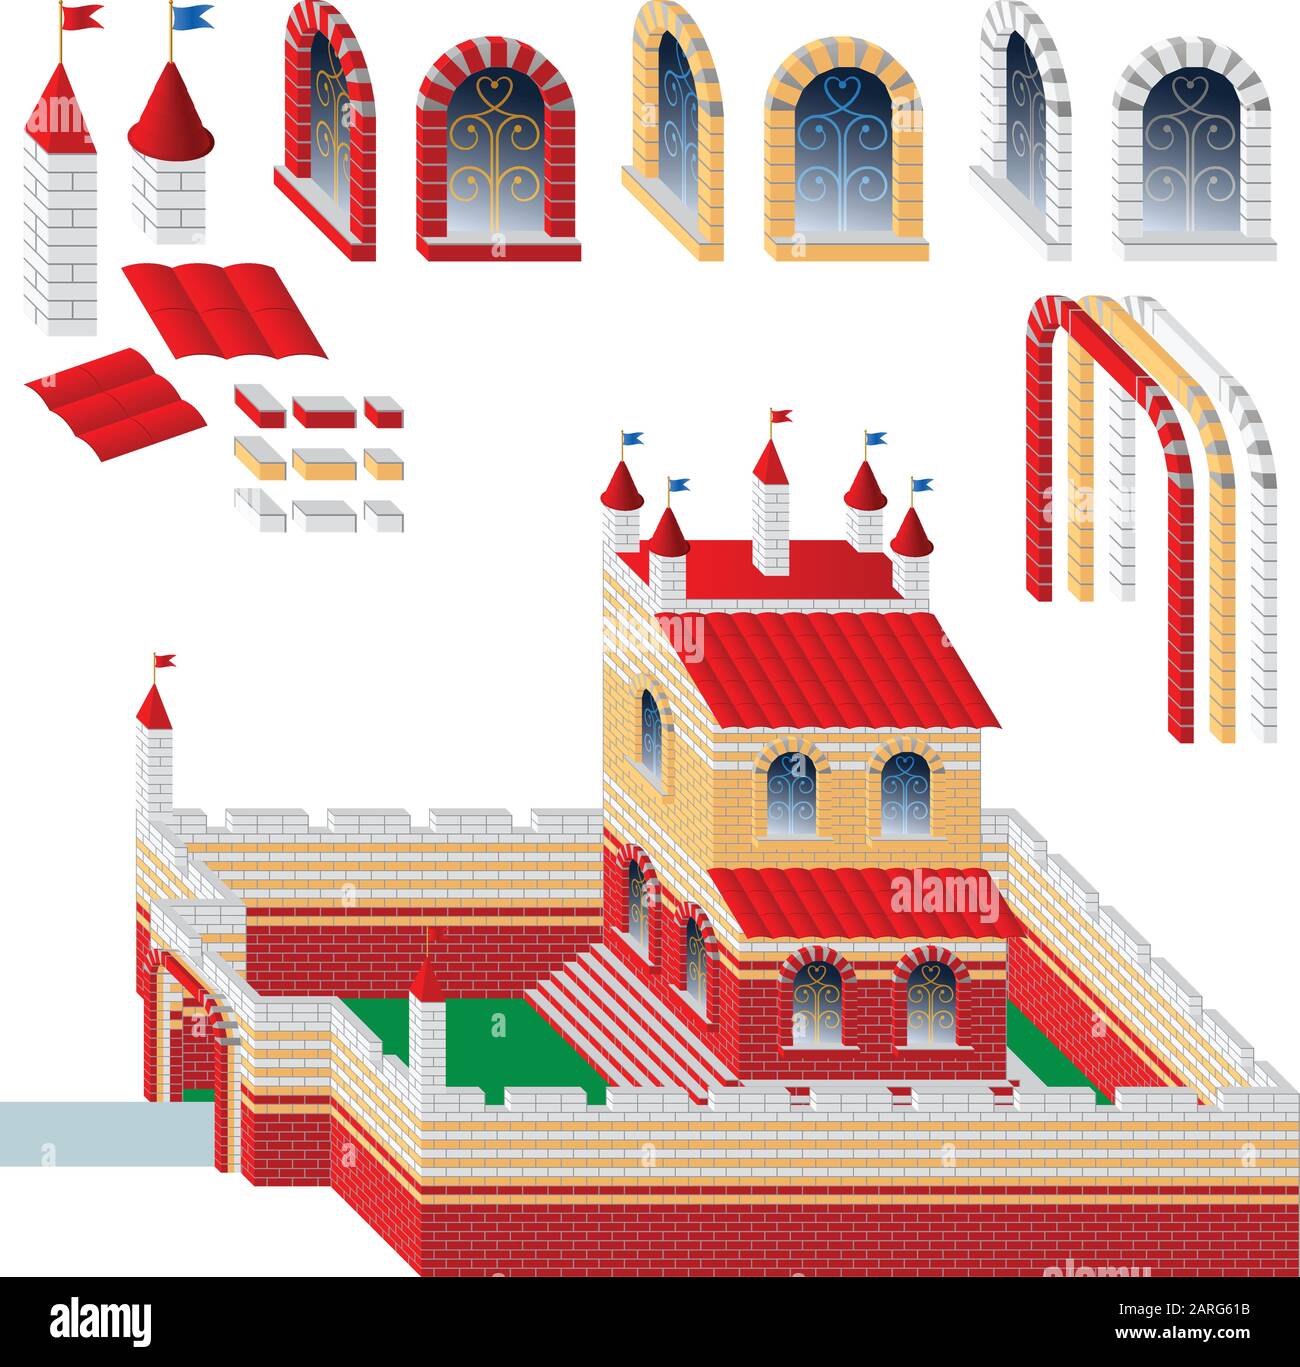 Bausatz aus Ziegelsteinen, Fenstern, Bögen, Türmen und Dach für den Bau von Spielzeugbauten, Burgen und Objekten; Fabelhafter Palast mit Zaun Stock Vektor